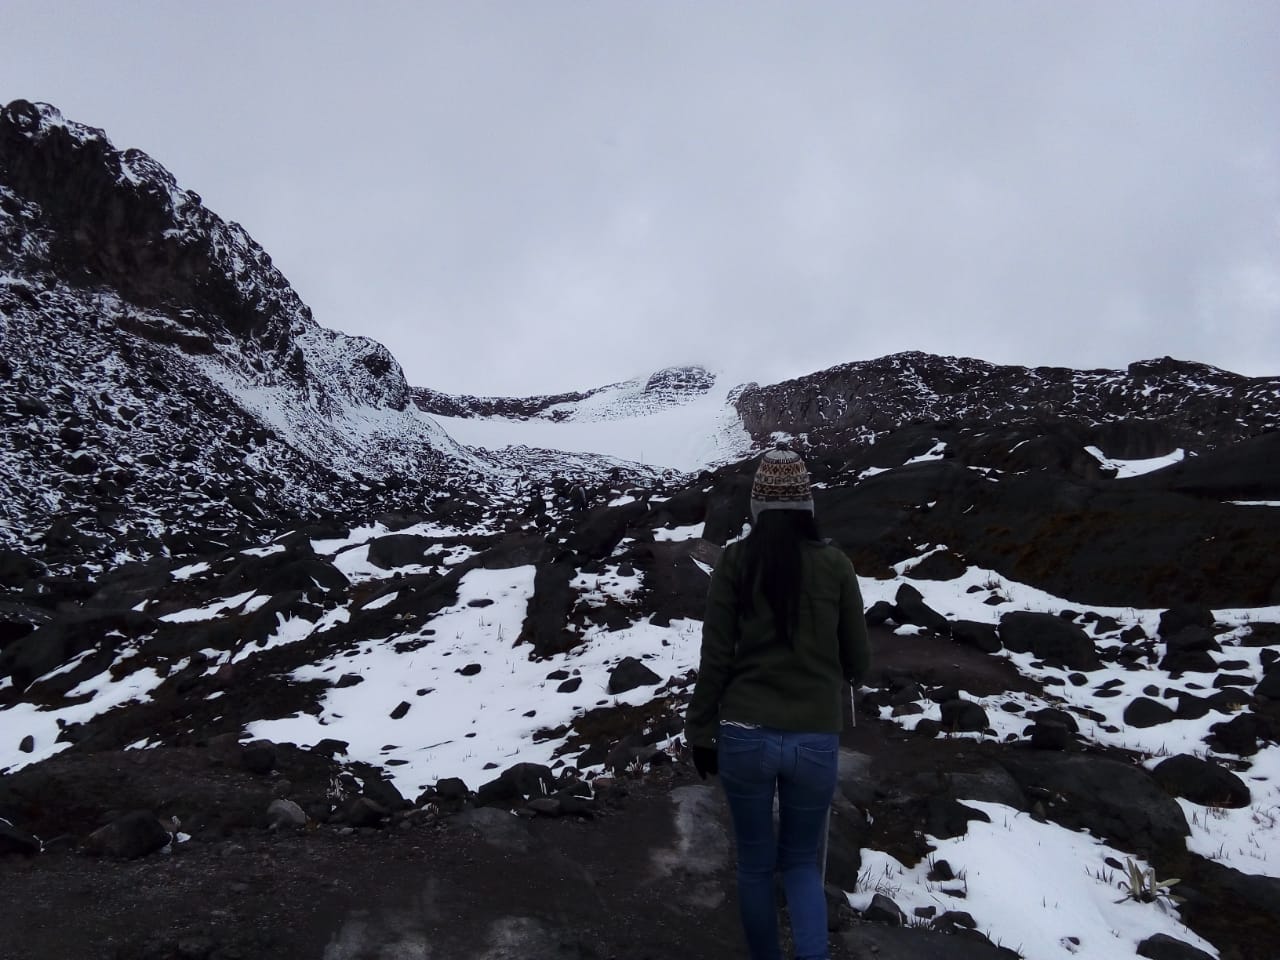 Nevado santa isabel - Nevado Santa Isabel - Parque Natural los Nevados - Colombia - Trekking - Alta Montaña